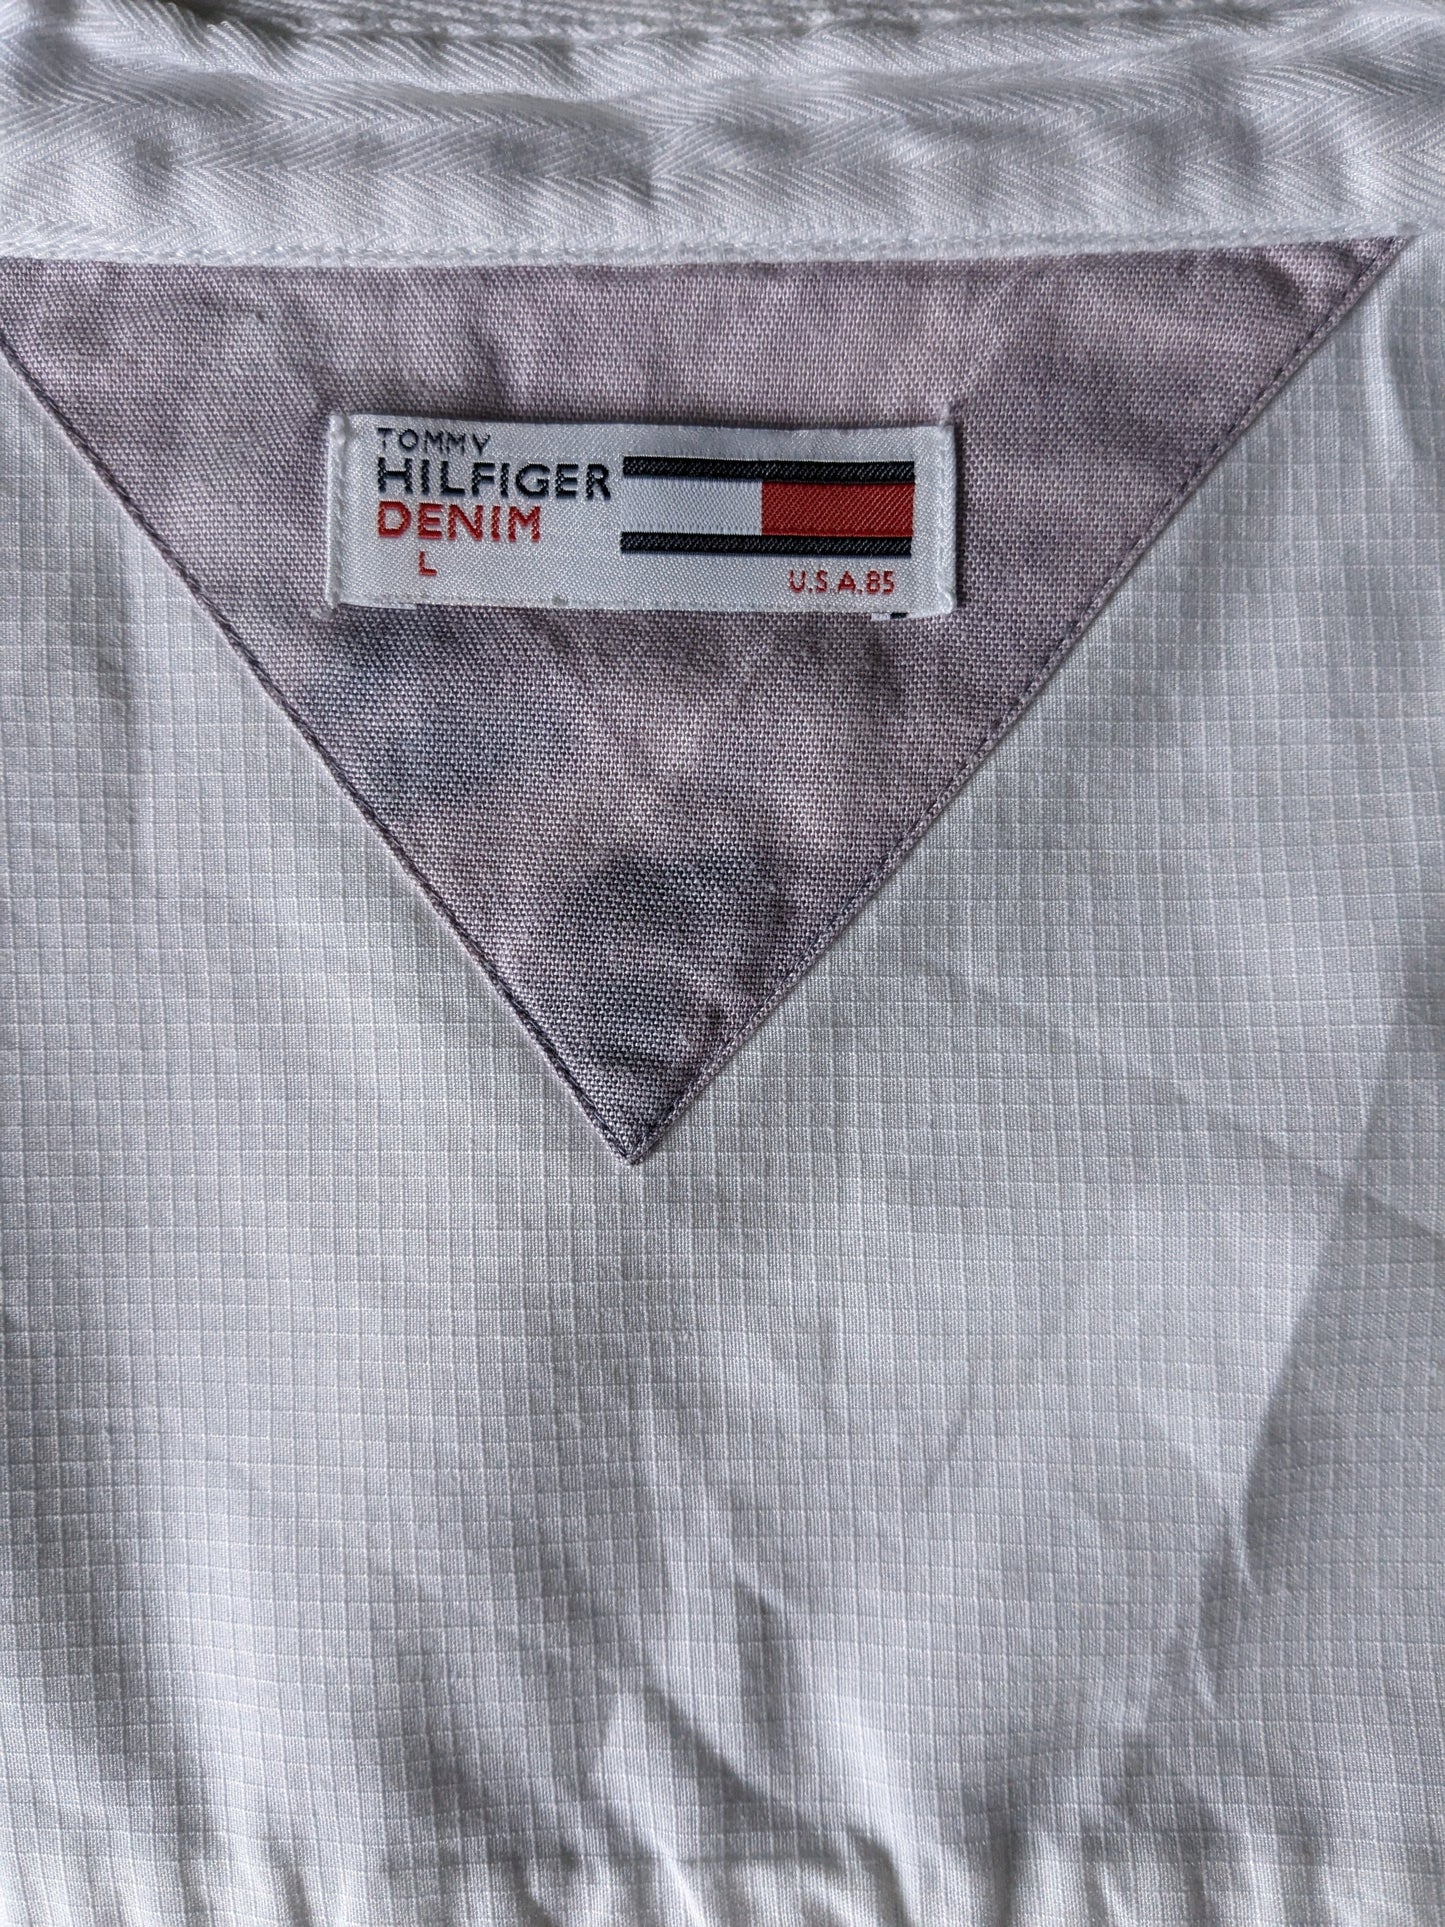 Hilfiger -Denim -Hemd mit Mao / Stehkragen. Weiß. Größe L.